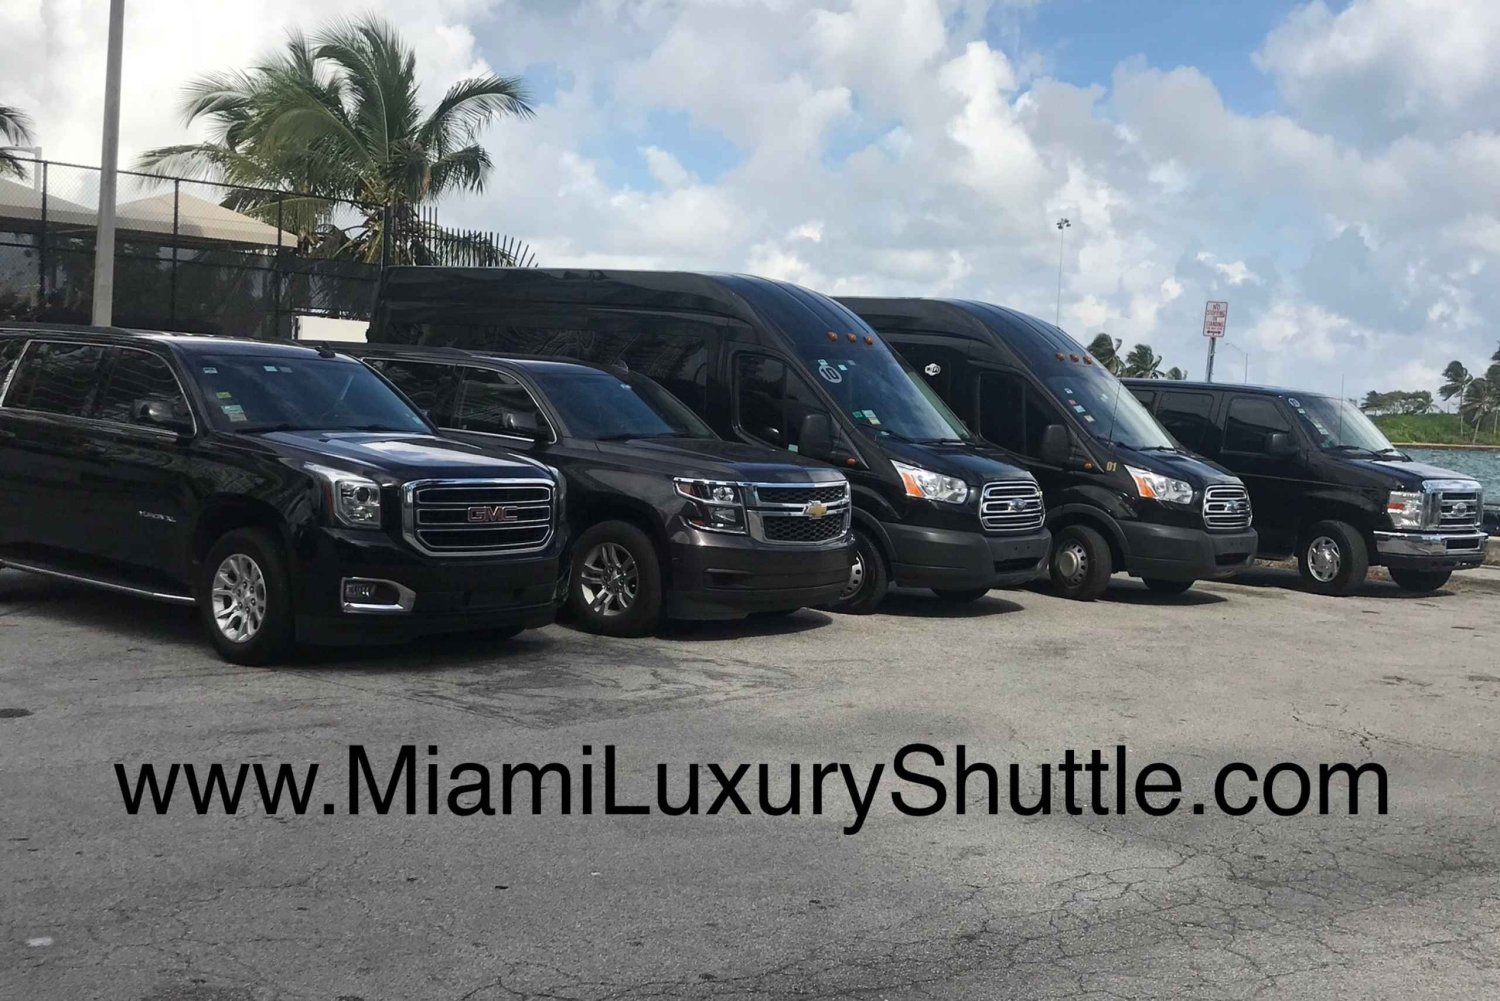 Port of Miami Shuttle to Miami Airport or Hotel in Miami